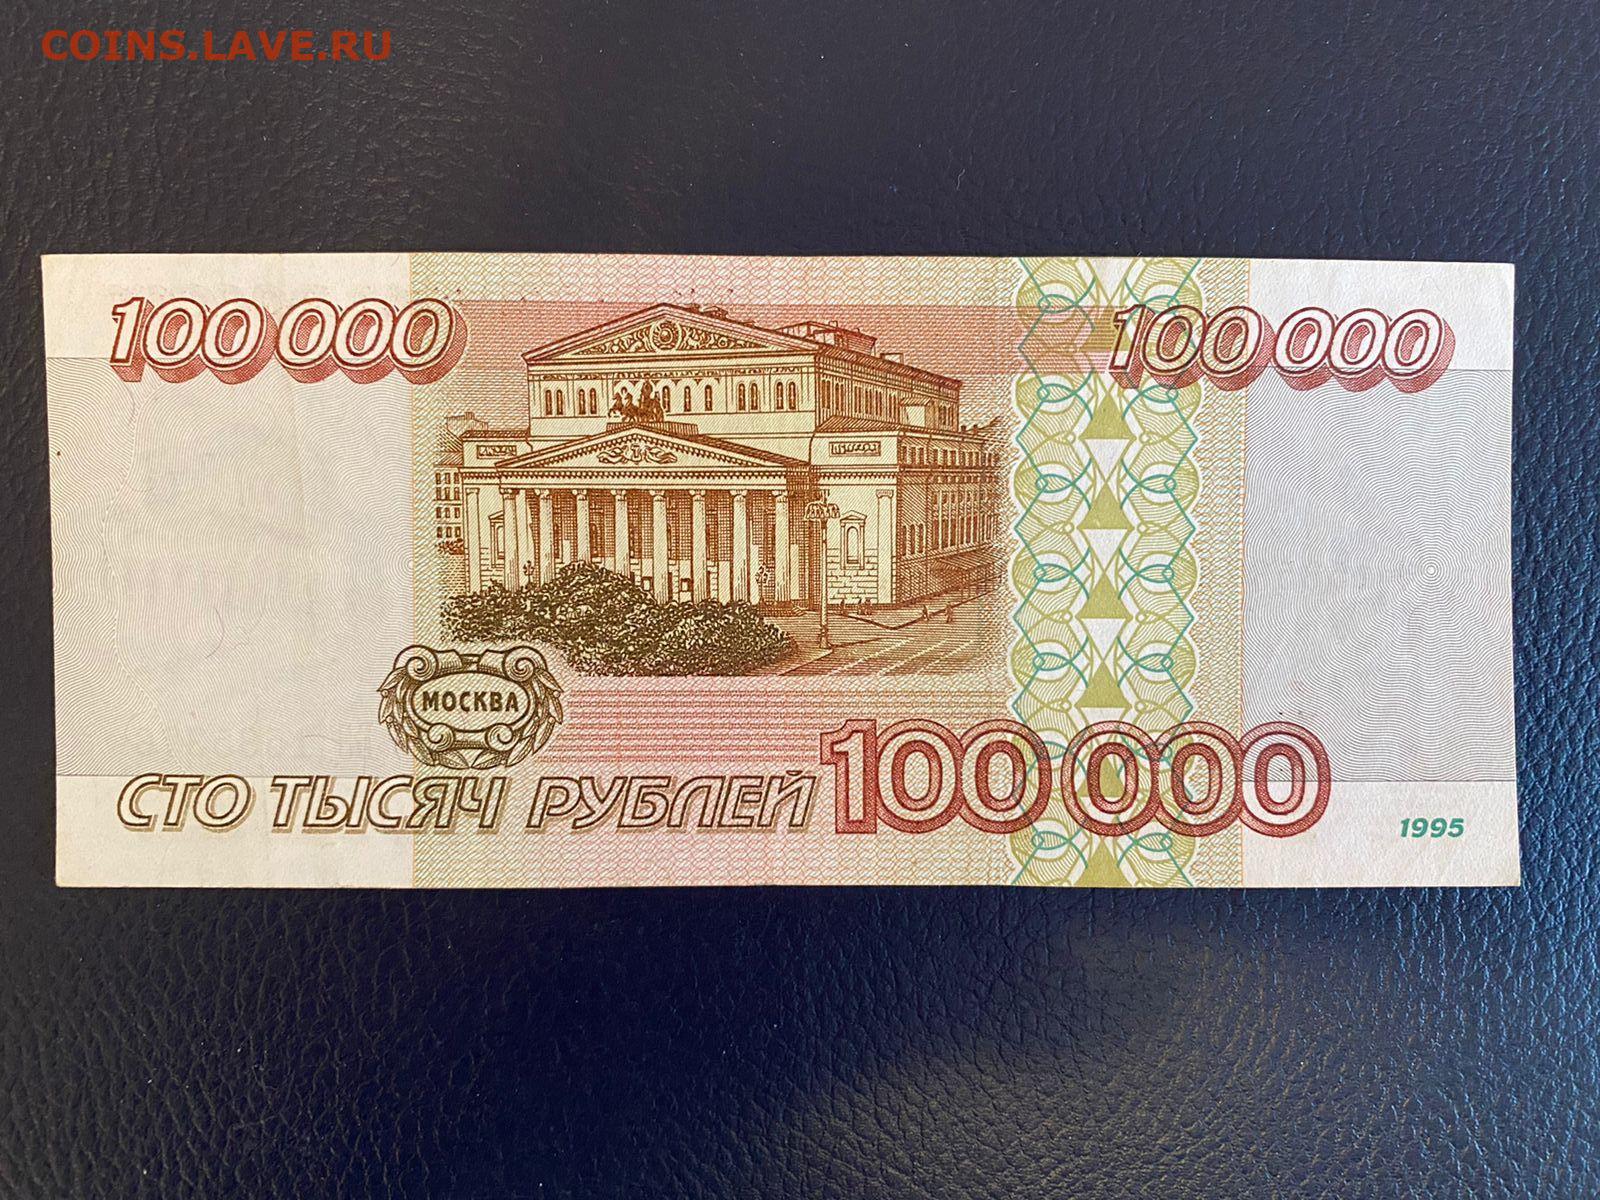 100000 1000 1. 100000 Рублей 1995. Купюра 100000 рублей. Банкнота 100000 рублей 1995. Рубли 1995.